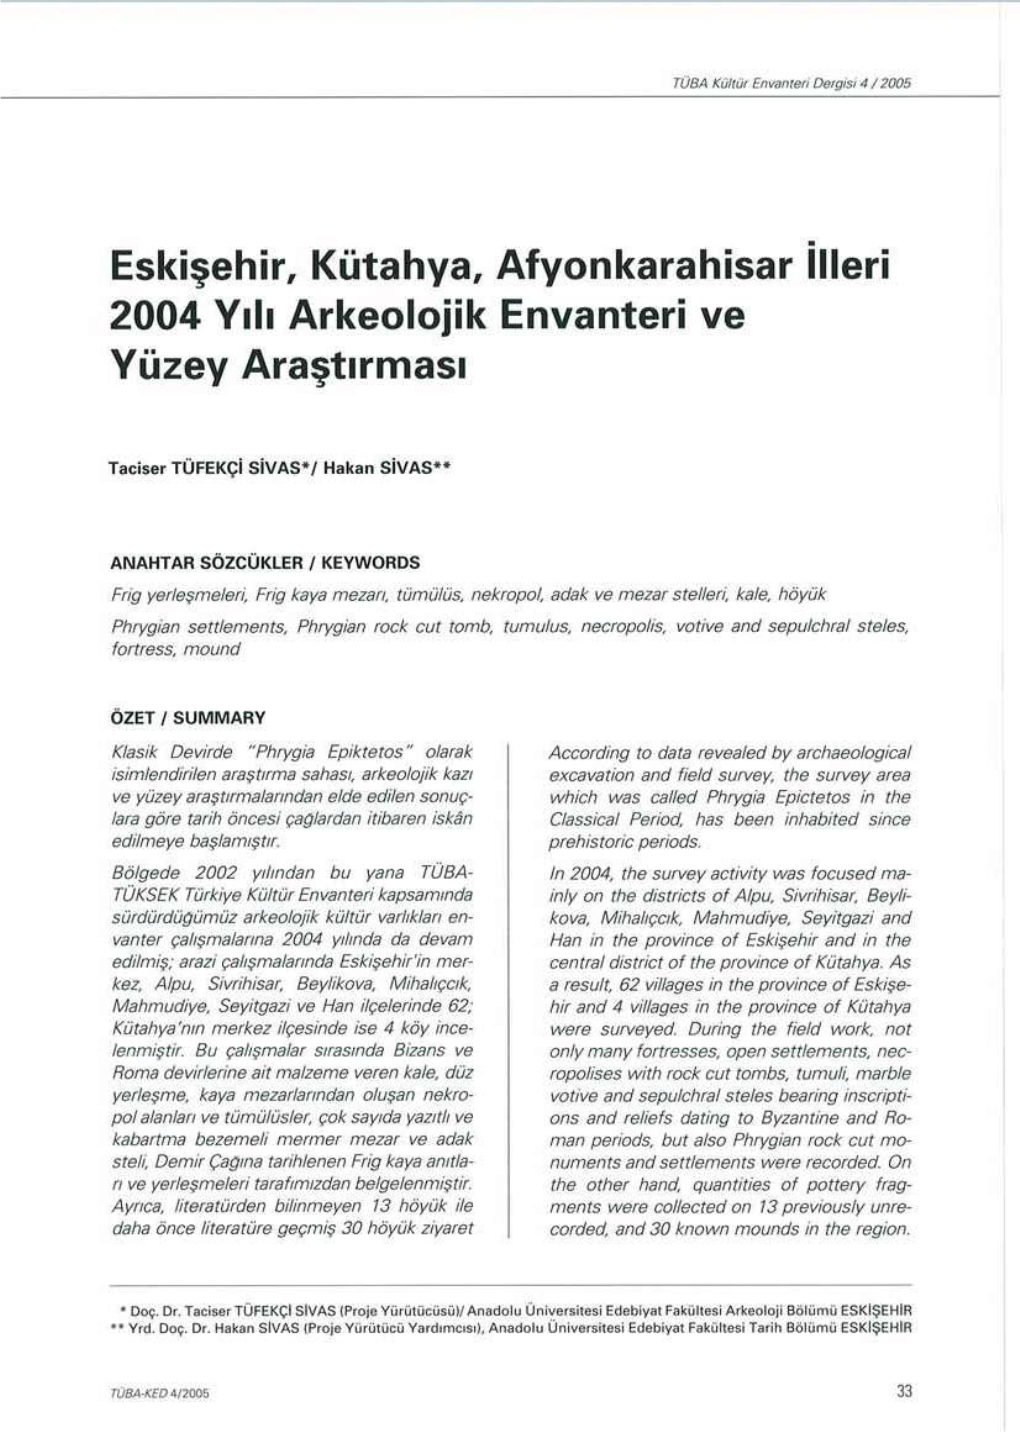 Eskişehir, Kütahya, Afyonkarahisar İlleri 2004 Yılı Arkeolojik Envanteri Ve Yüzey Araştırması